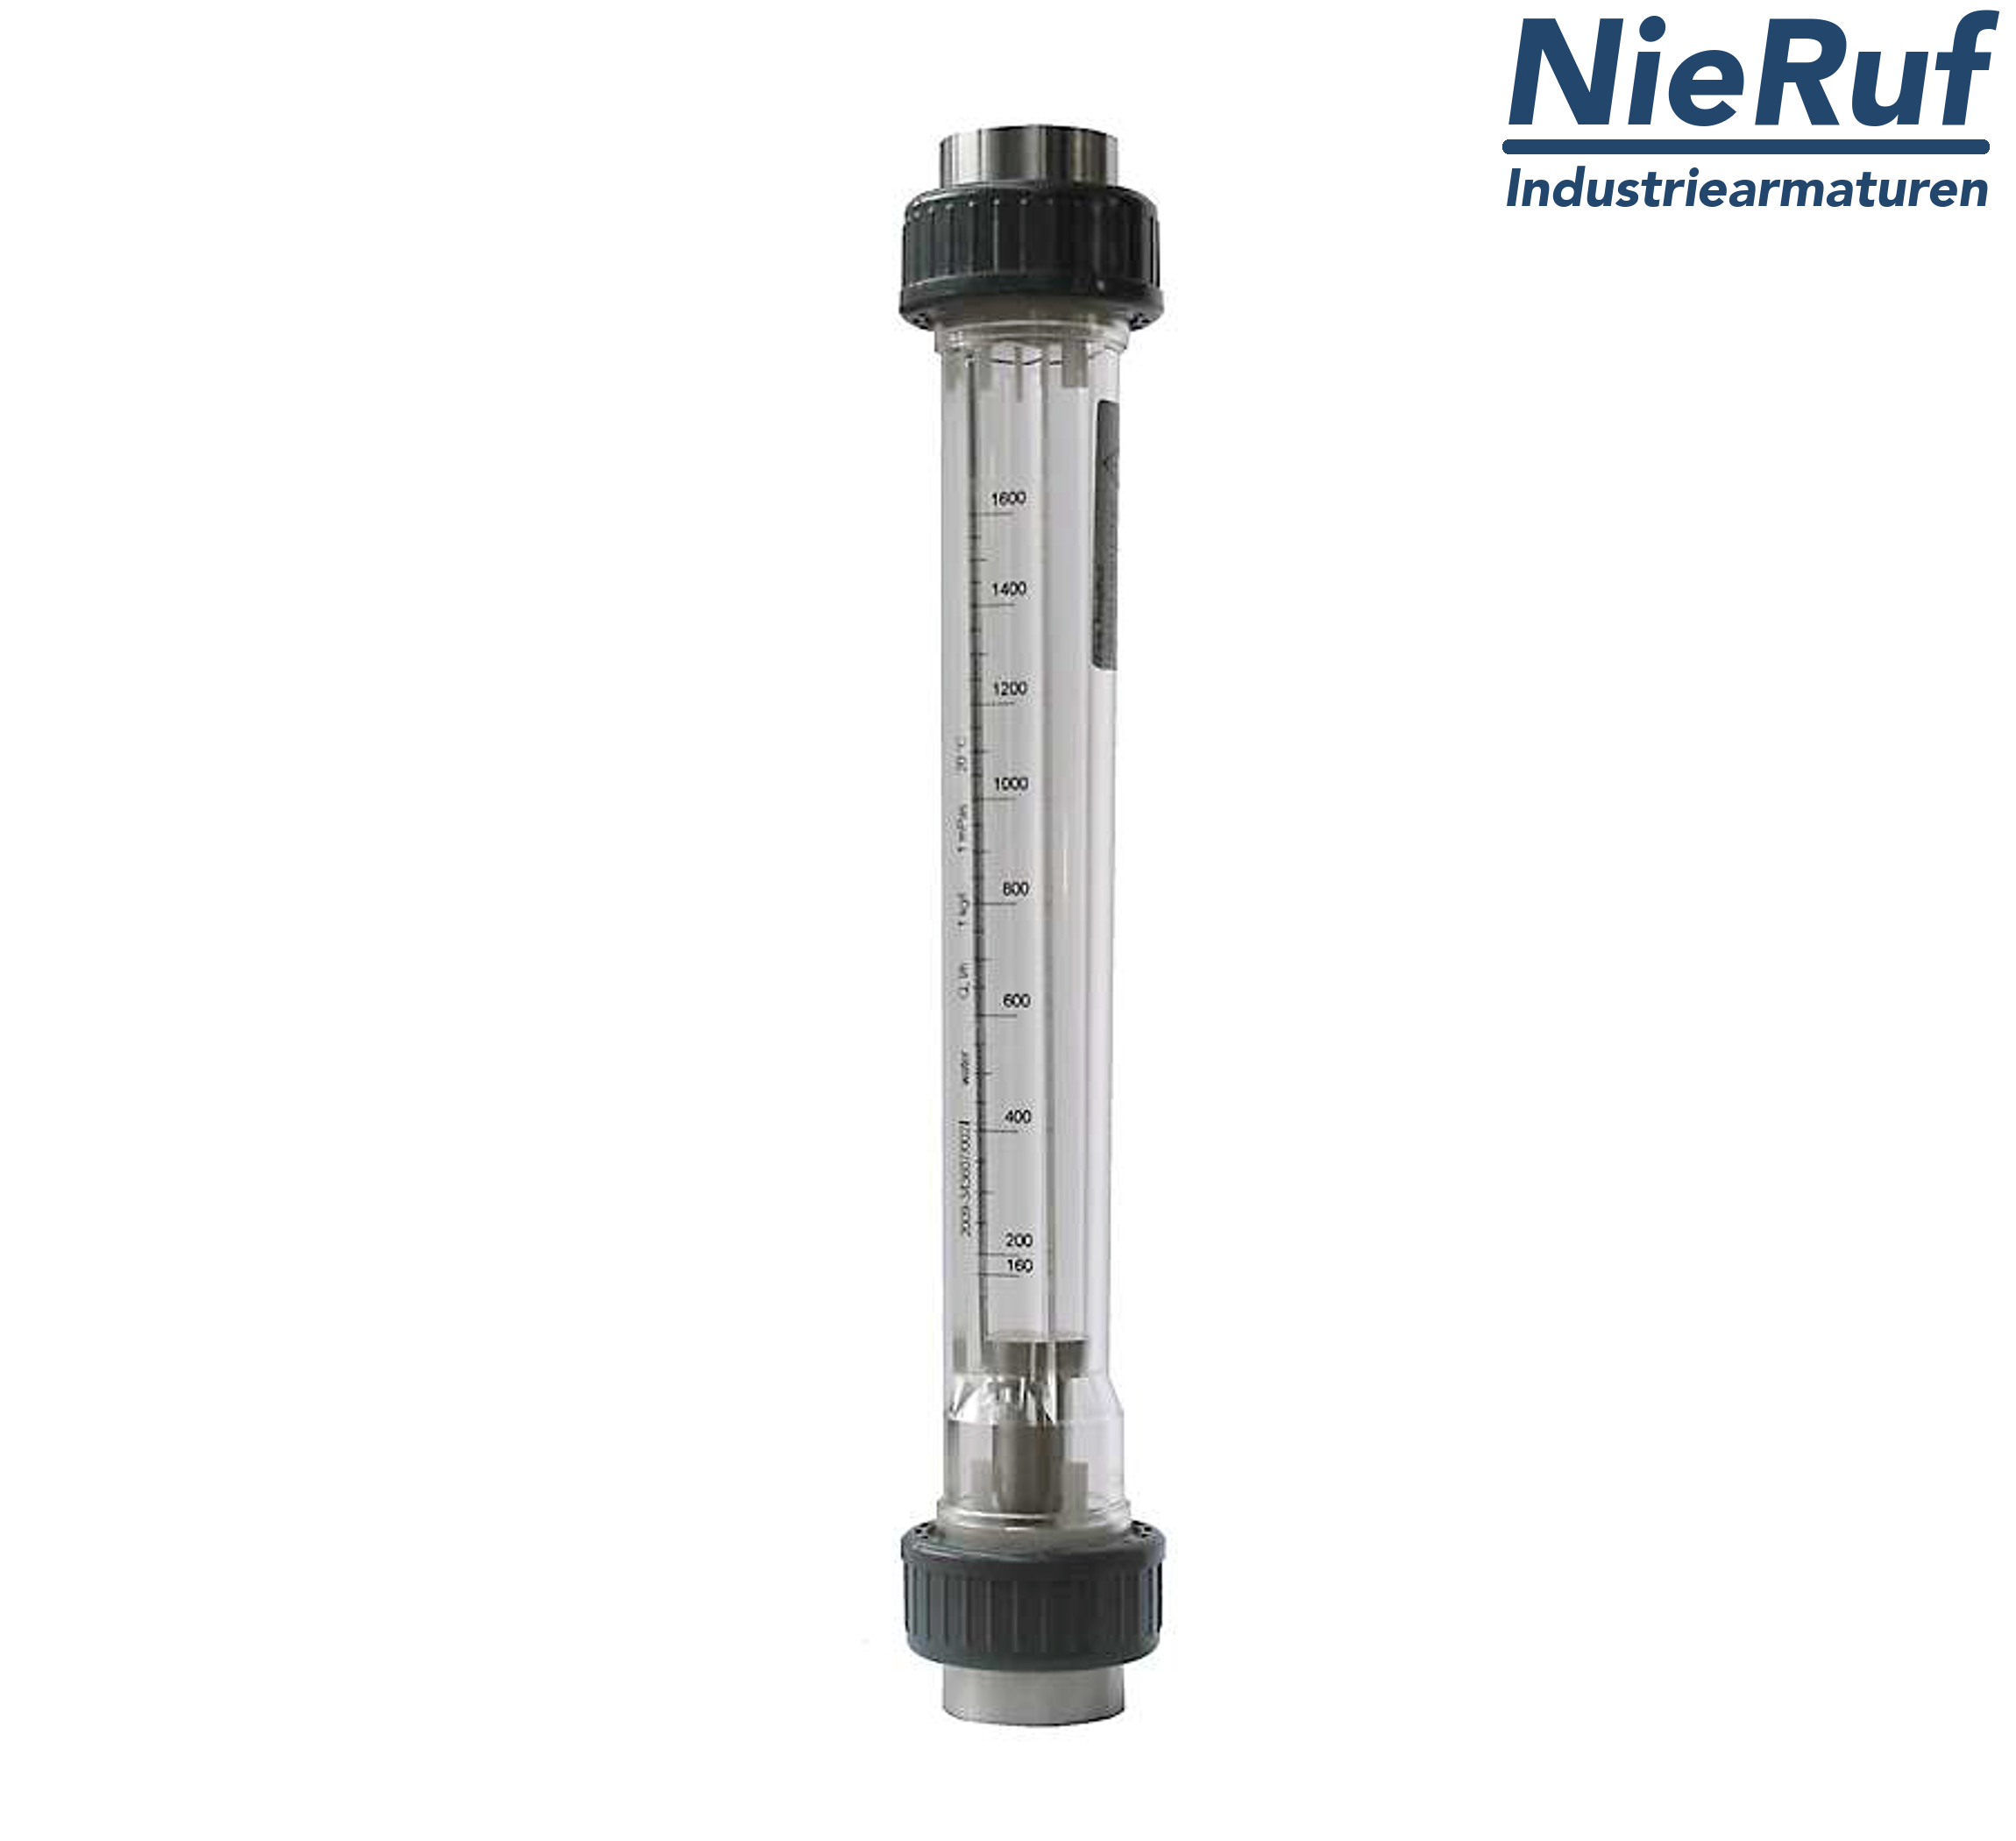 Variable area flowmeter 2" Inch NPT 117000.0 - 350000 l/h air NBR